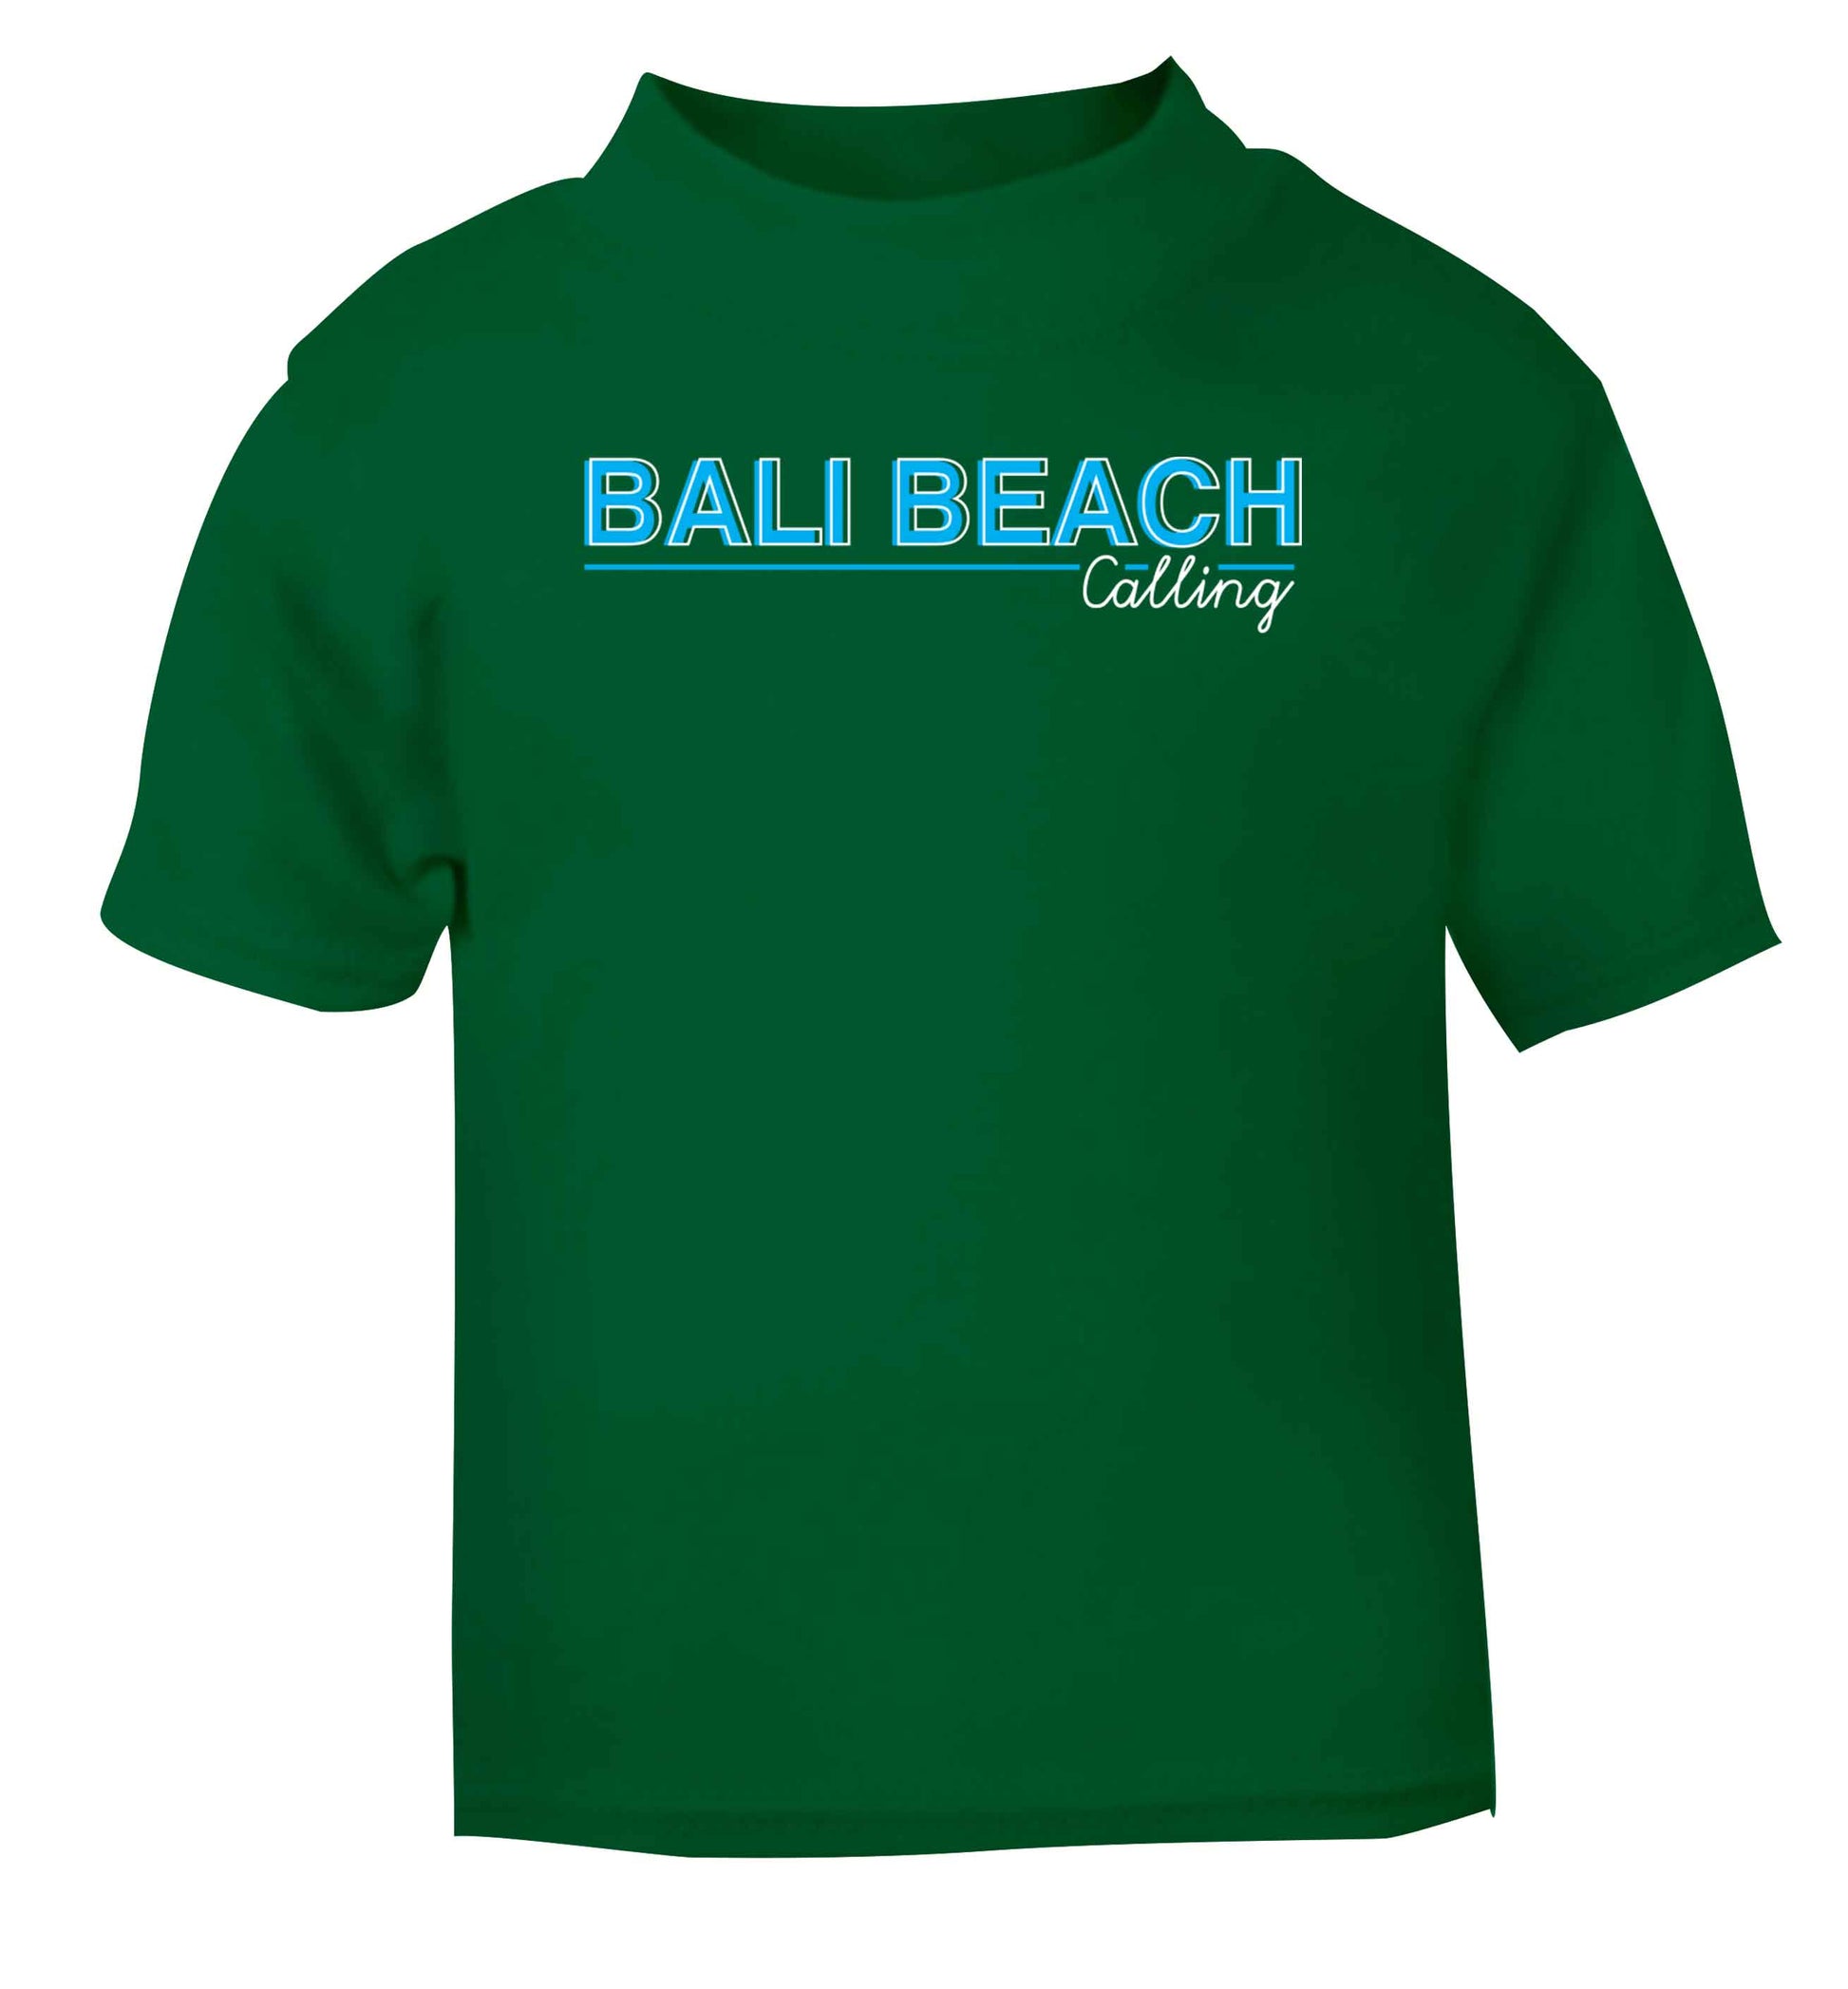 Bali beach calling green Baby Toddler Tshirt 2 Years